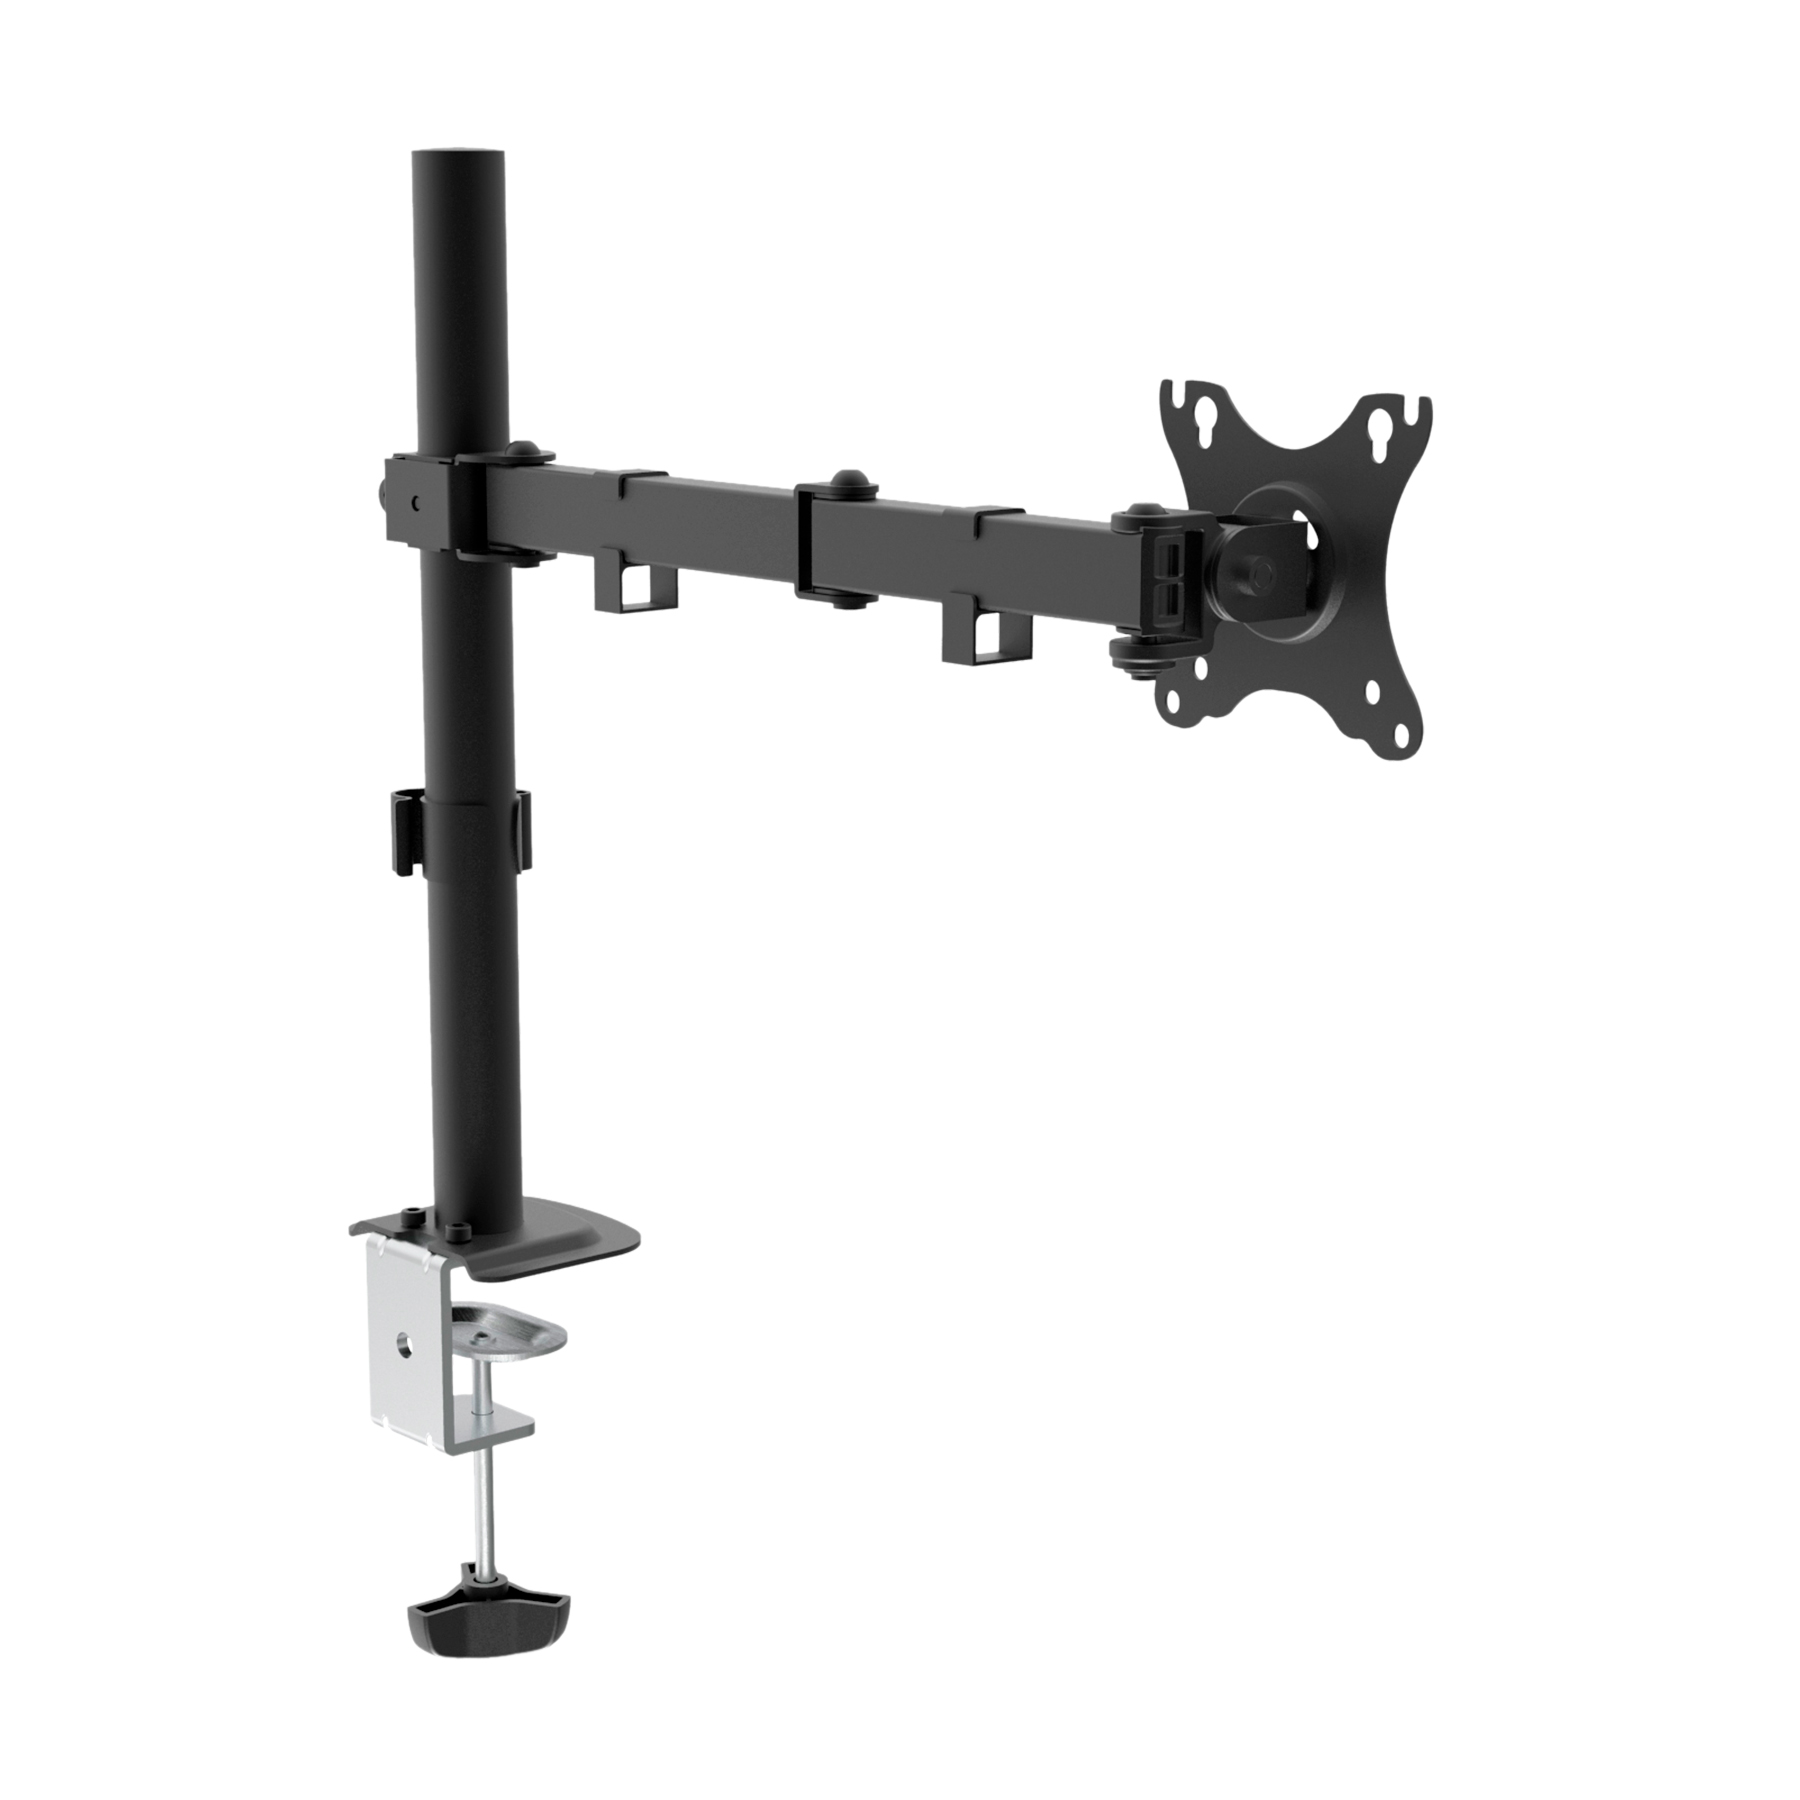 Unykach UK1421 Support de table avec bras articulé pour moniteur 10"-32" - Pivotant, inclinable et extensible - Gestion des câbles - Poids maximum 10 kg - VESA 100 x 100 mm